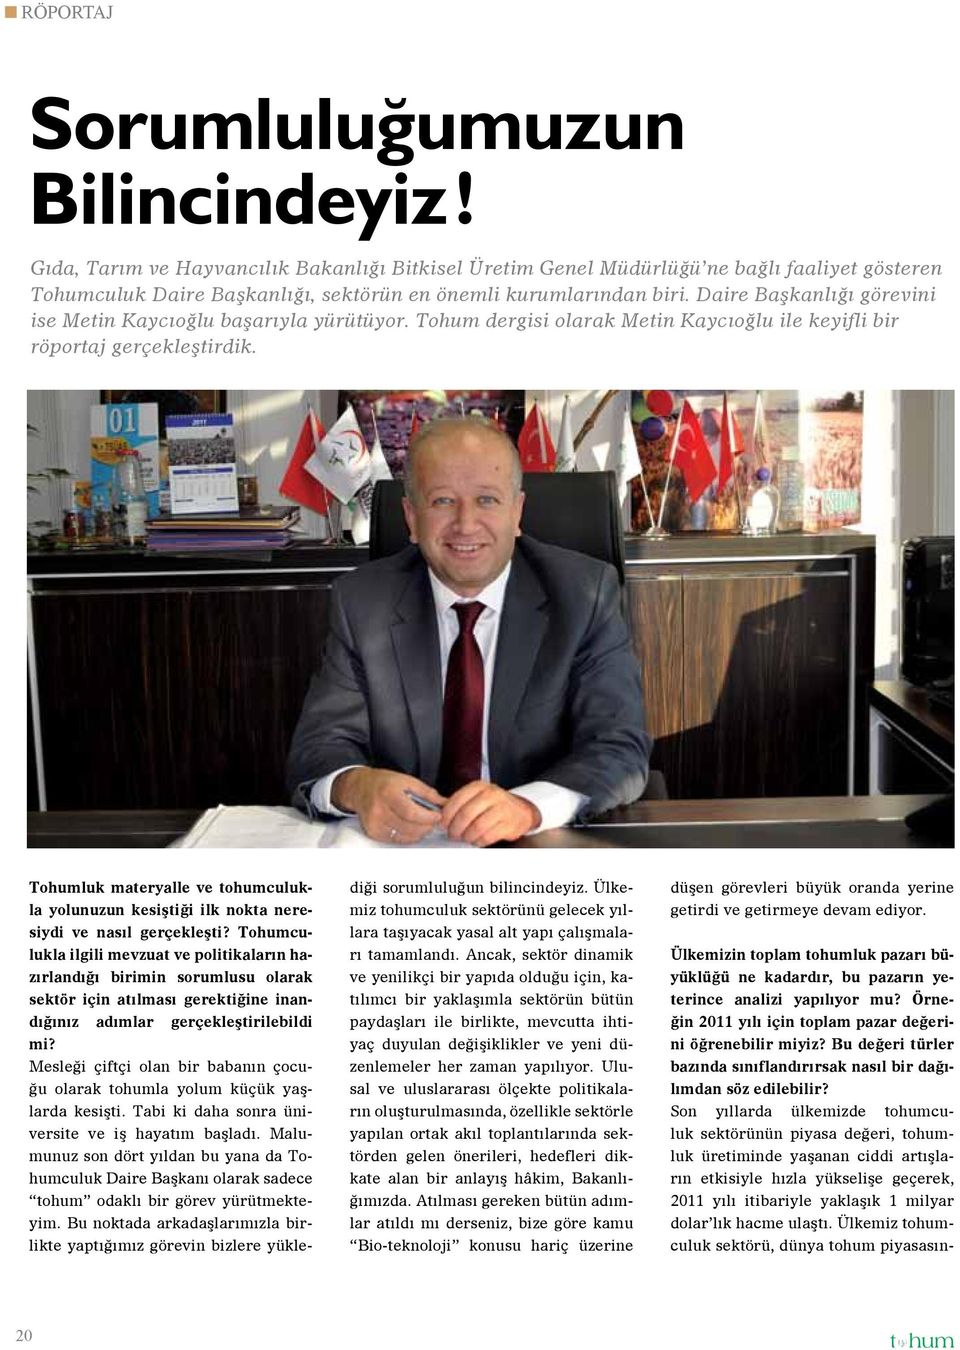 Daire Başkanlığı görevini ise Metin Kaycıoğlu başarıyla yürütüyor. Tohum dergisi olarak Metin Kaycıoğlu ile keyifli bir röportaj gerçekleştirdik.